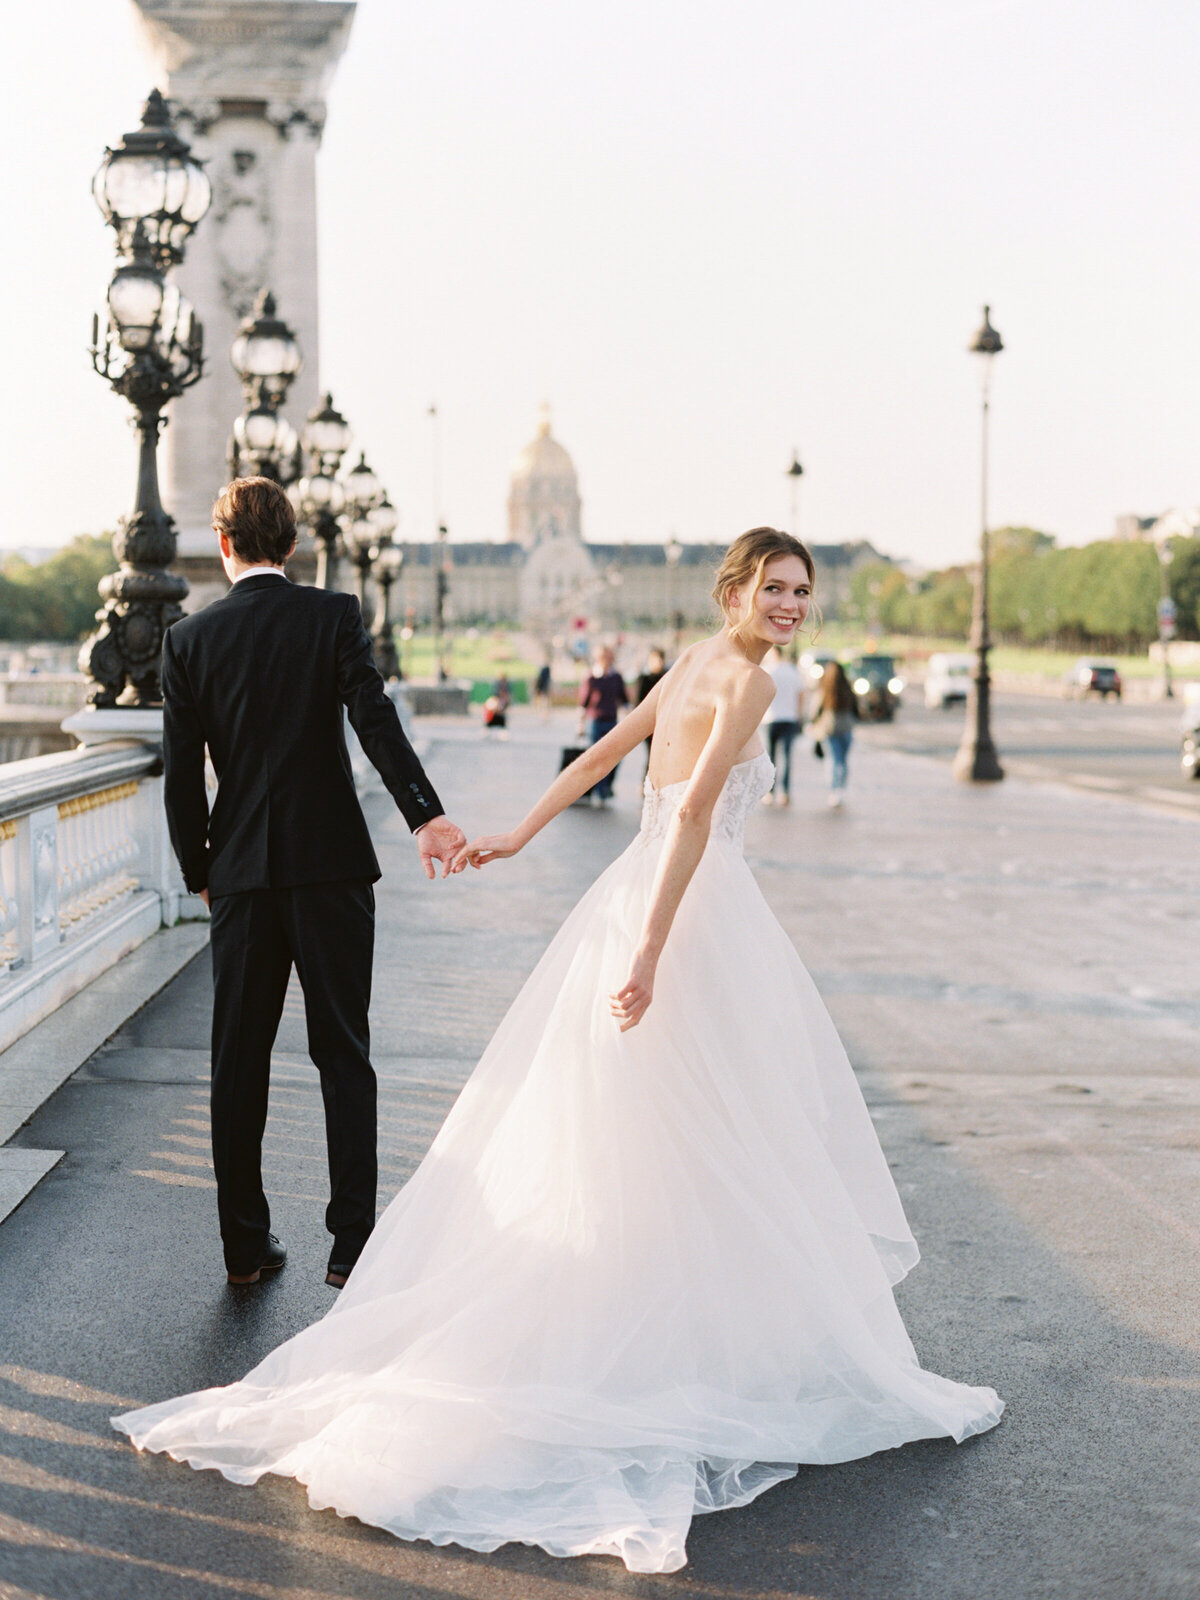 petit-palais-elopement-paris-wedding-photographer-mackenzie-reiter-photography-pont-alexandre-bridge-paris-france-33